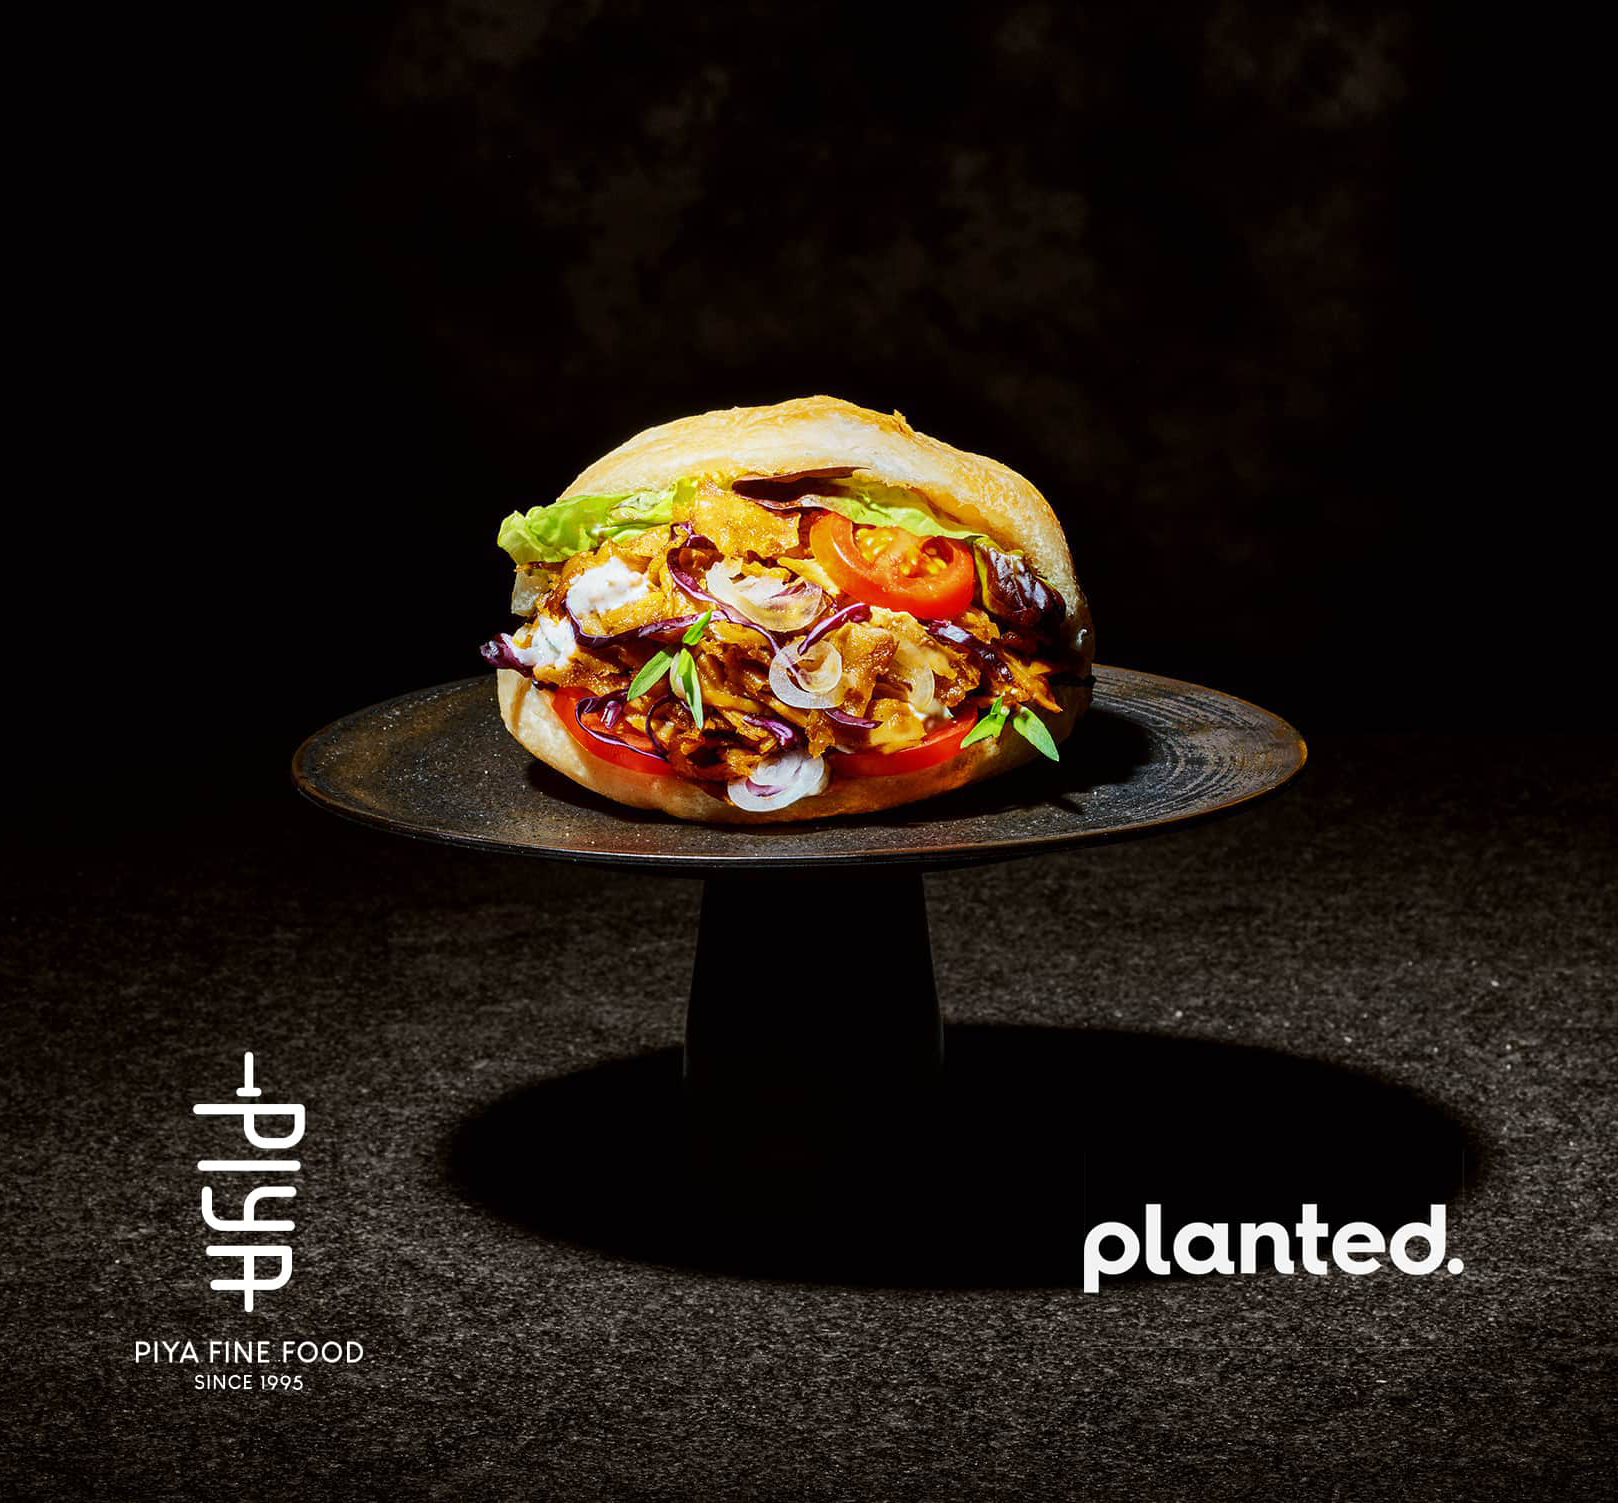 Eine PIYA-Werbekarte für den veganen planted-Döner voll mit feinen Zutaten